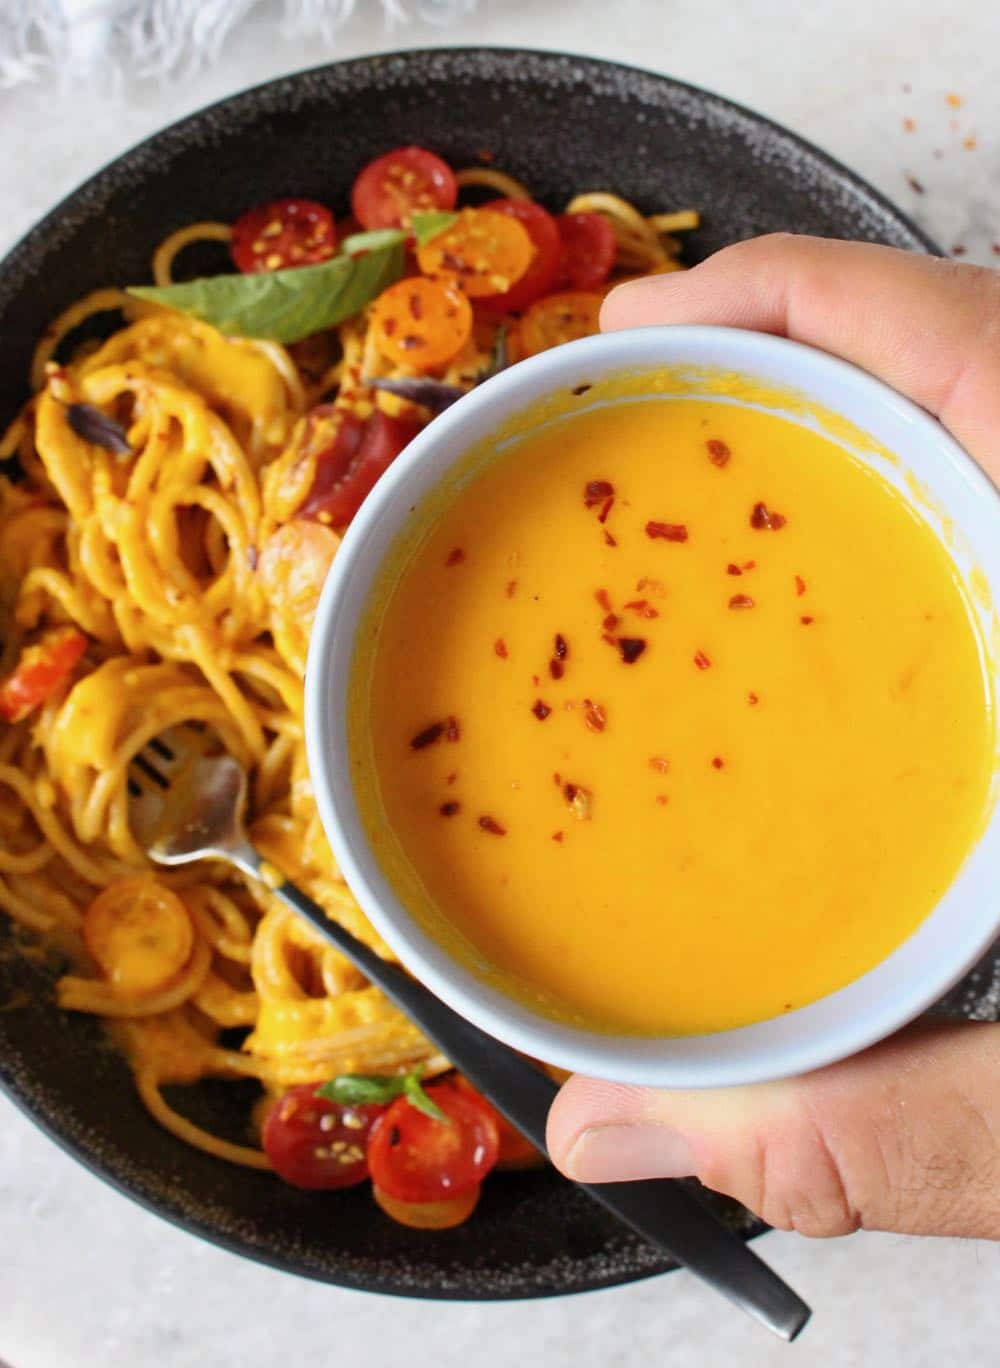 Pomo D'oro fresh tomato sauce